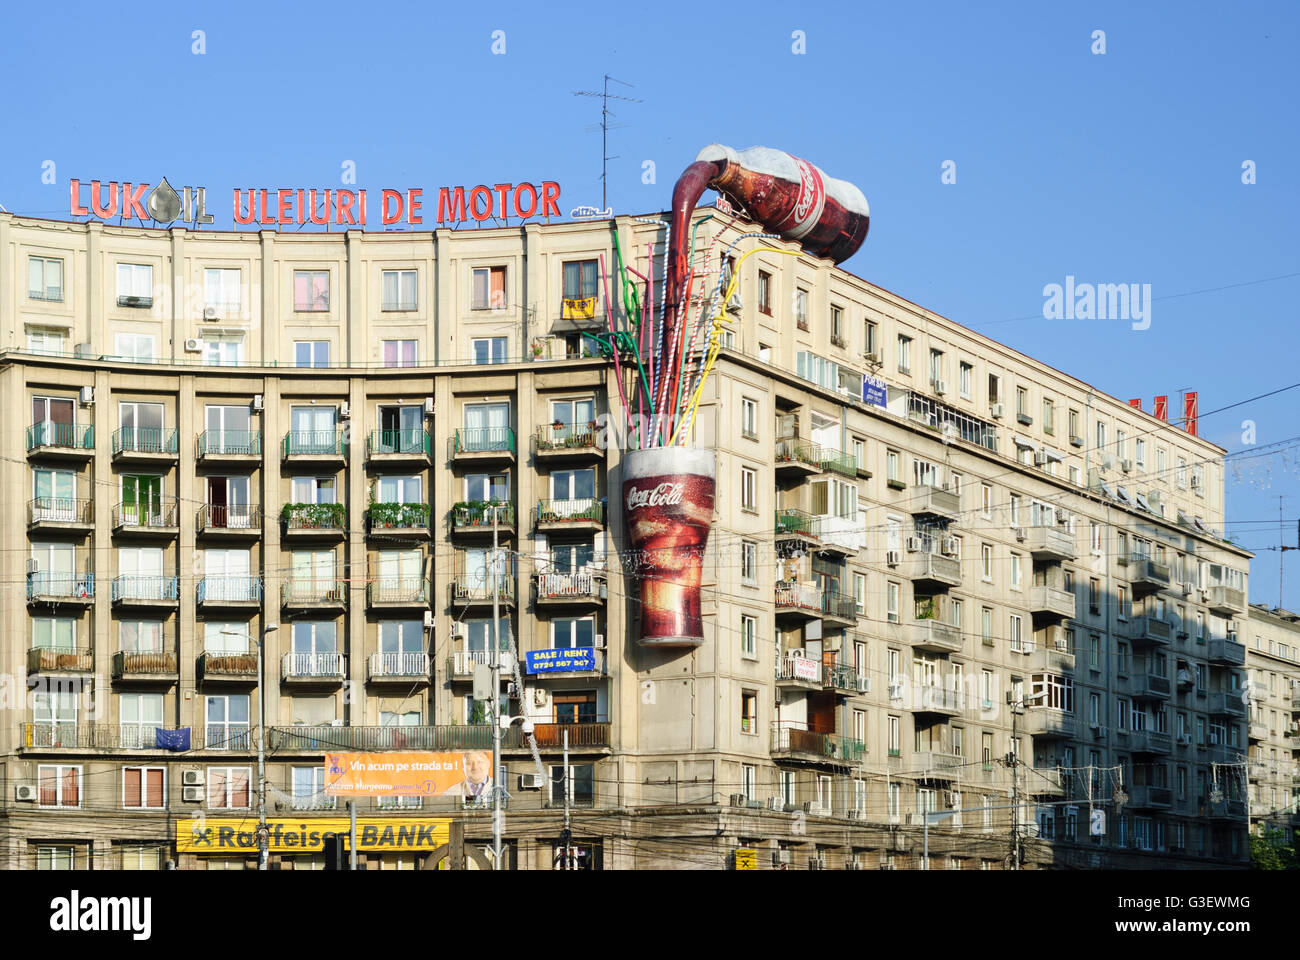 La place Piata Romana ; chambre avec une publicité pour Coca Cola, Roumanie BUCAREST Bucuresti Banque D'Images